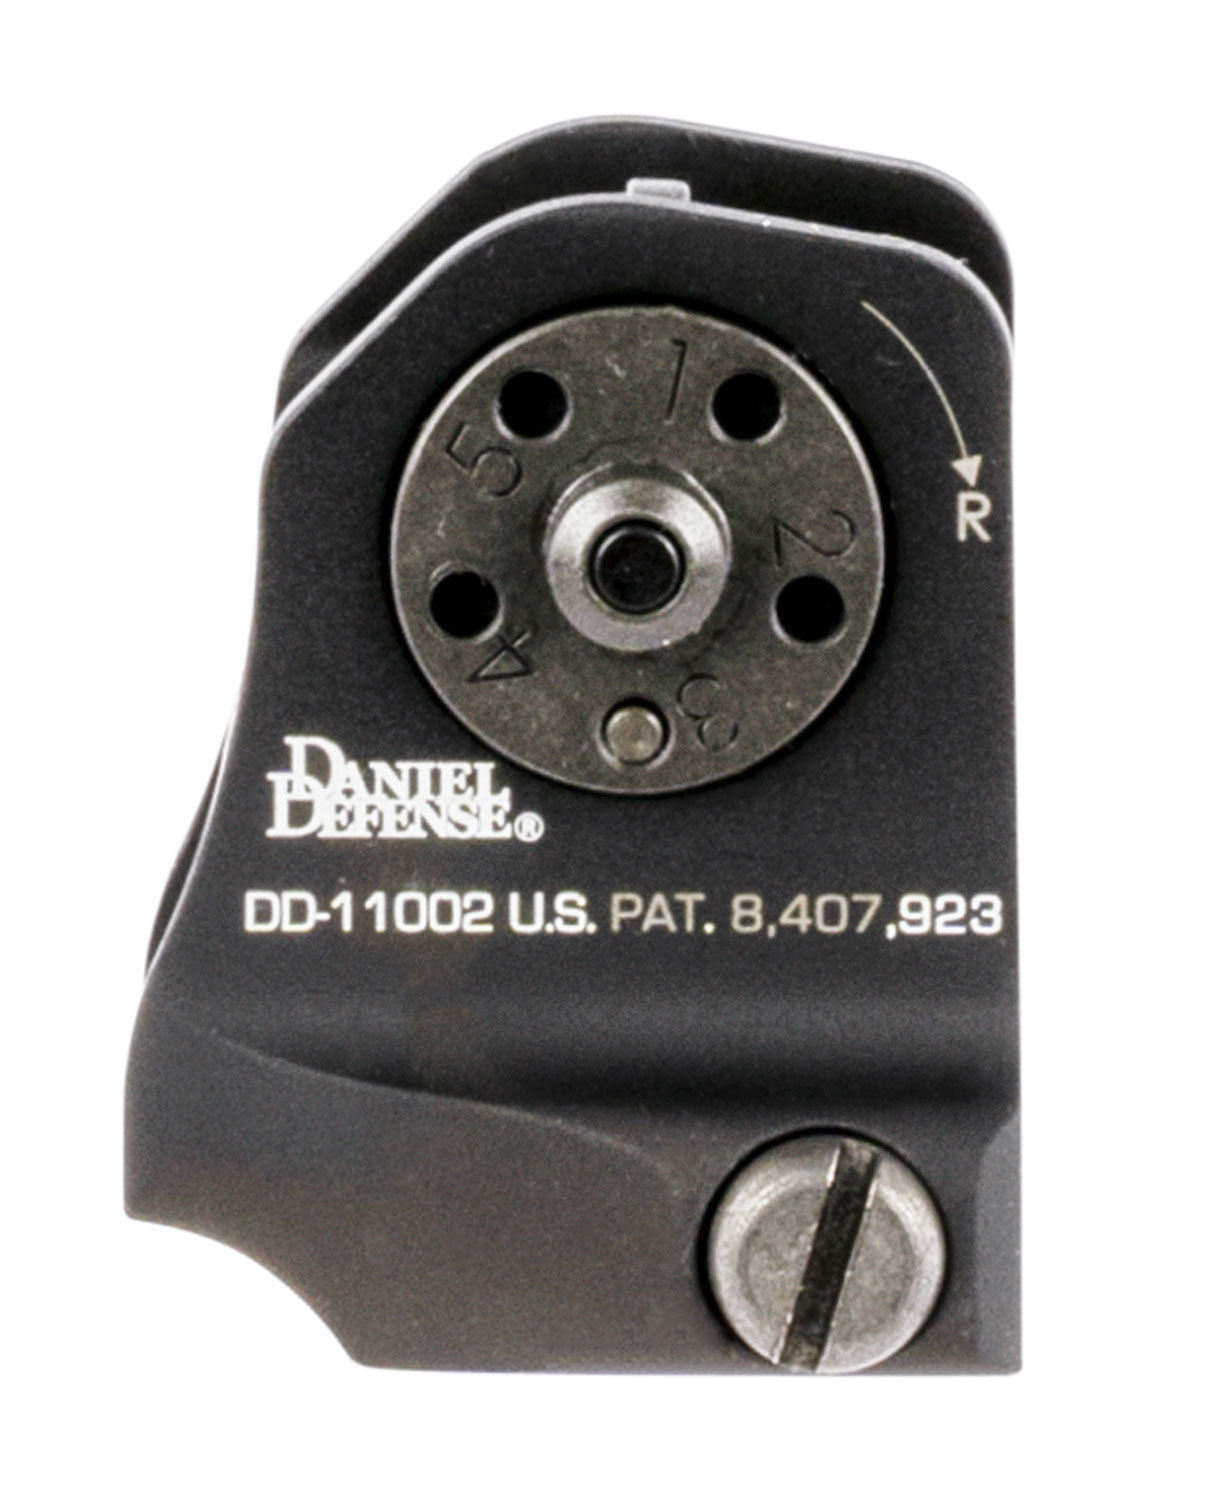 Daniel Defense 1906411002 A1.5 Fixed Rear Sight  Black Hardcoat Anodized Fixed Rear Sight